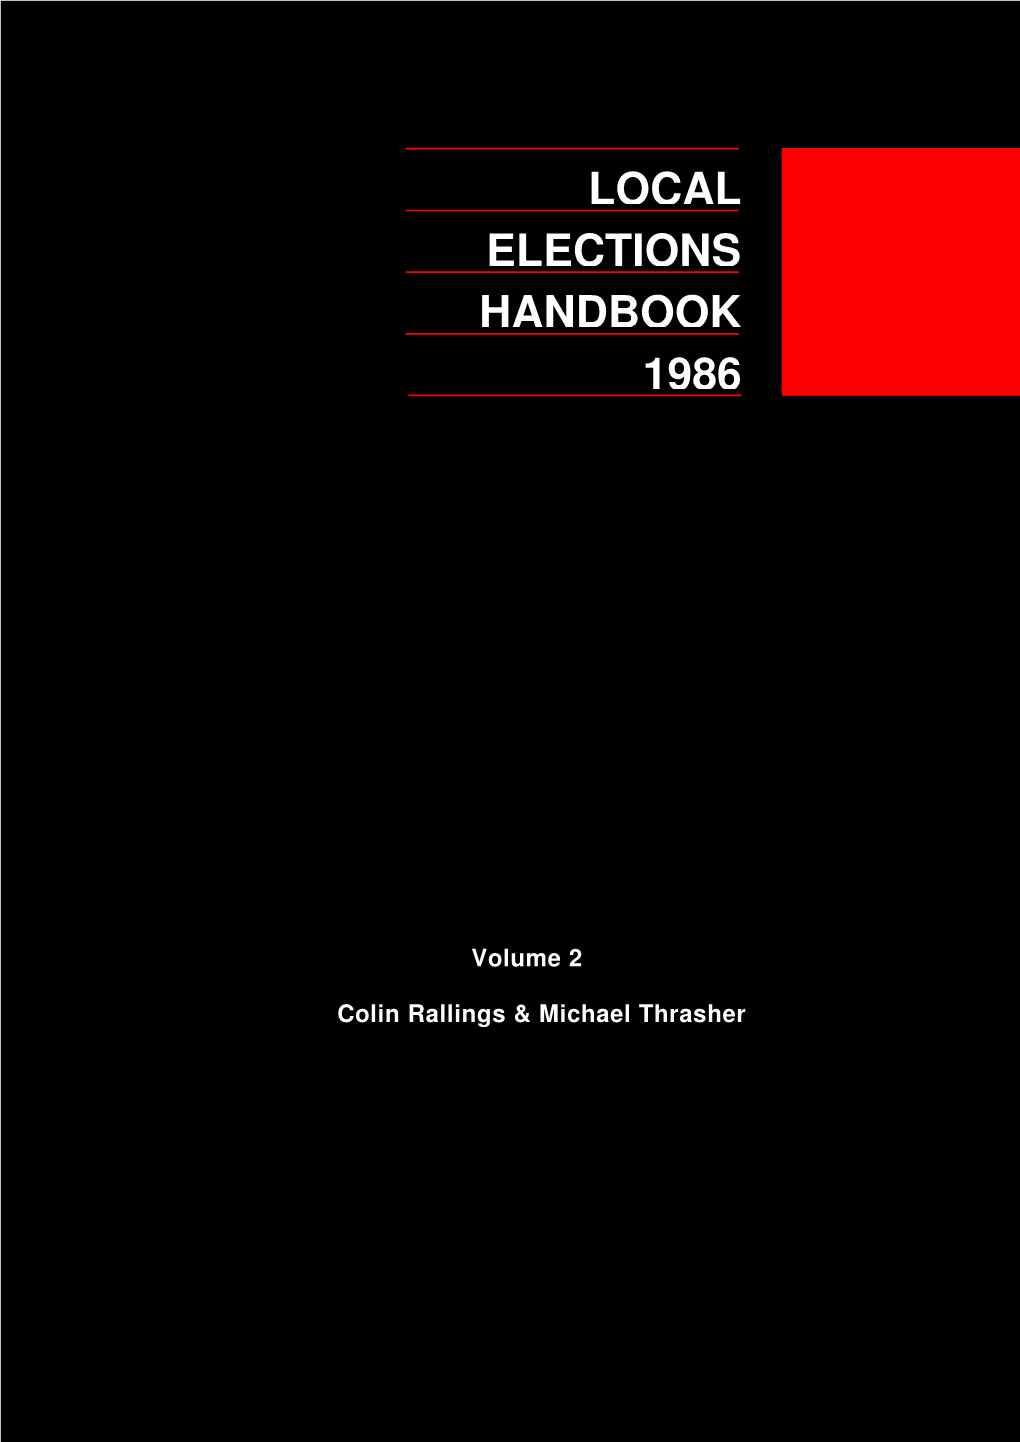 Local 1986 Handbook Elections